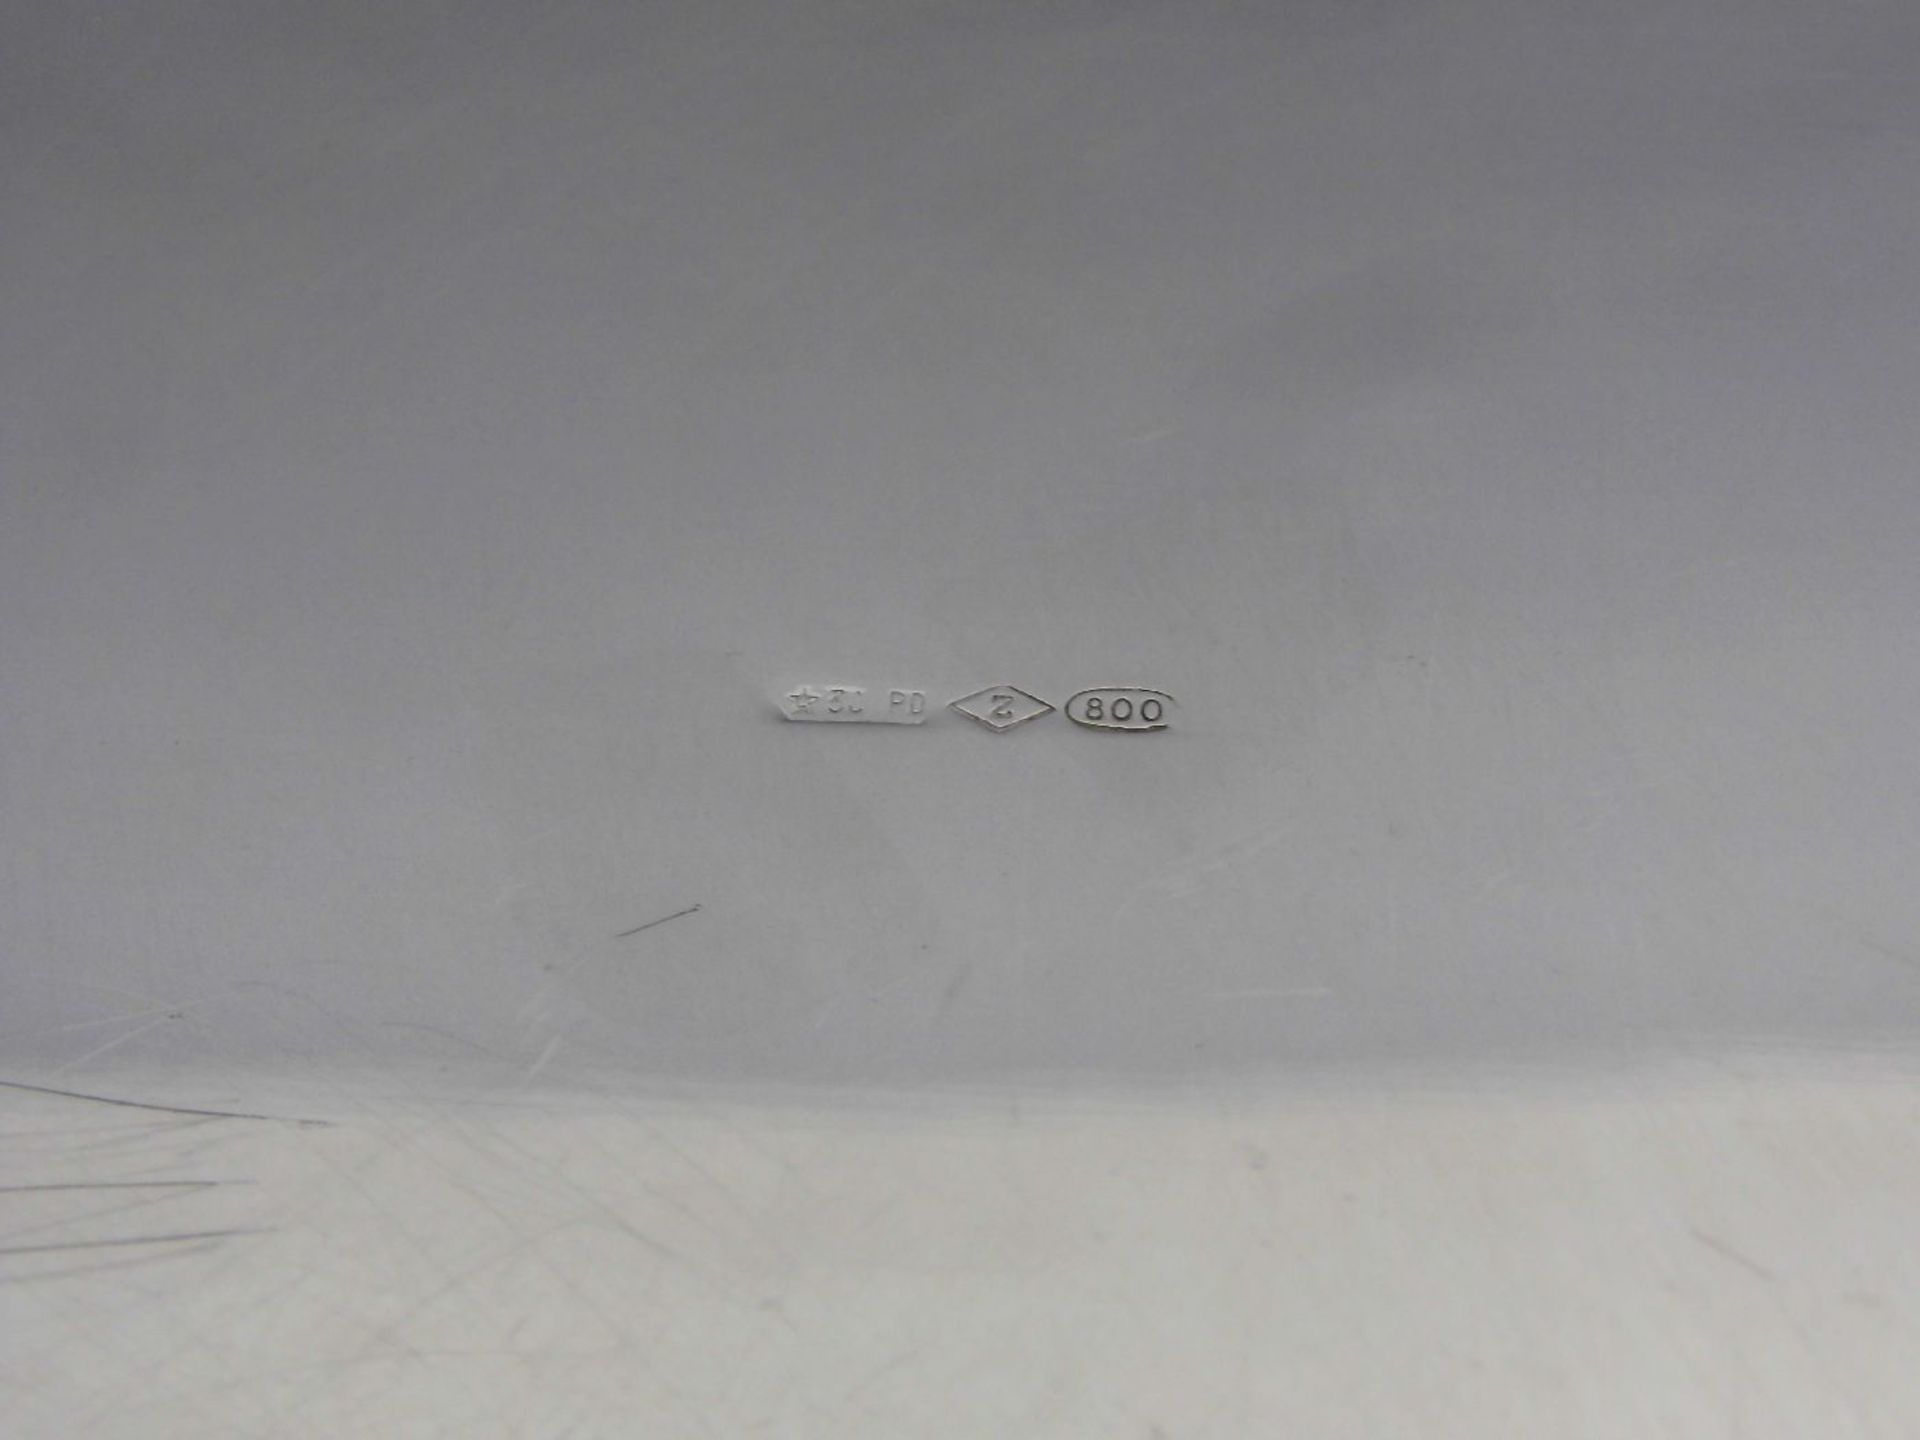 SCHALE / CACHEPOT, 800er Silber (342 g), gepunzt mit Feingehaltsangabe und Herstellermarke "Z" in - Bild 4 aus 4